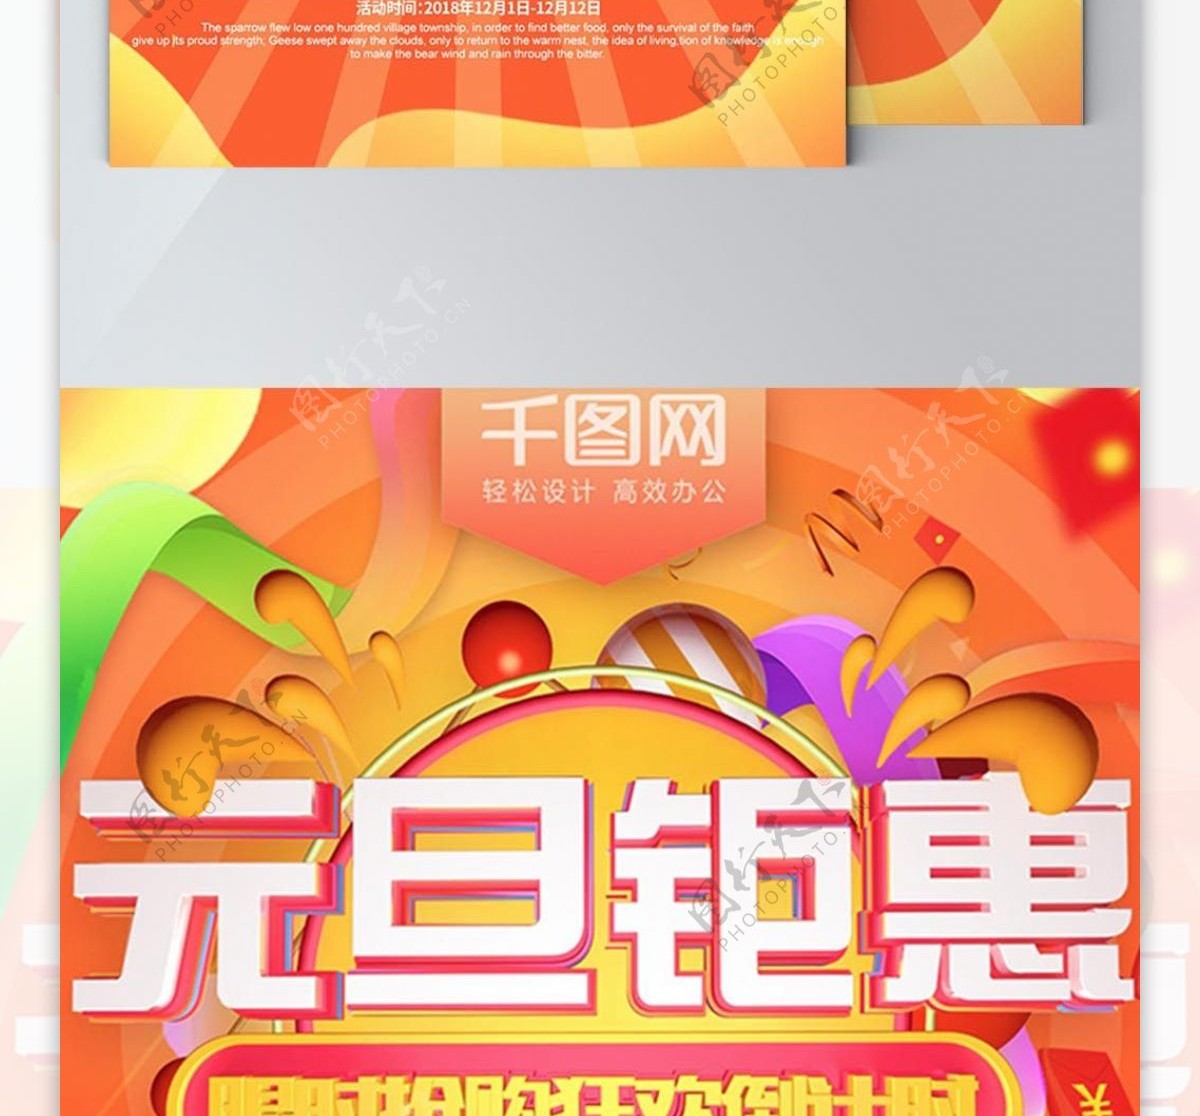 元旦特惠橙色节日促销宣传单